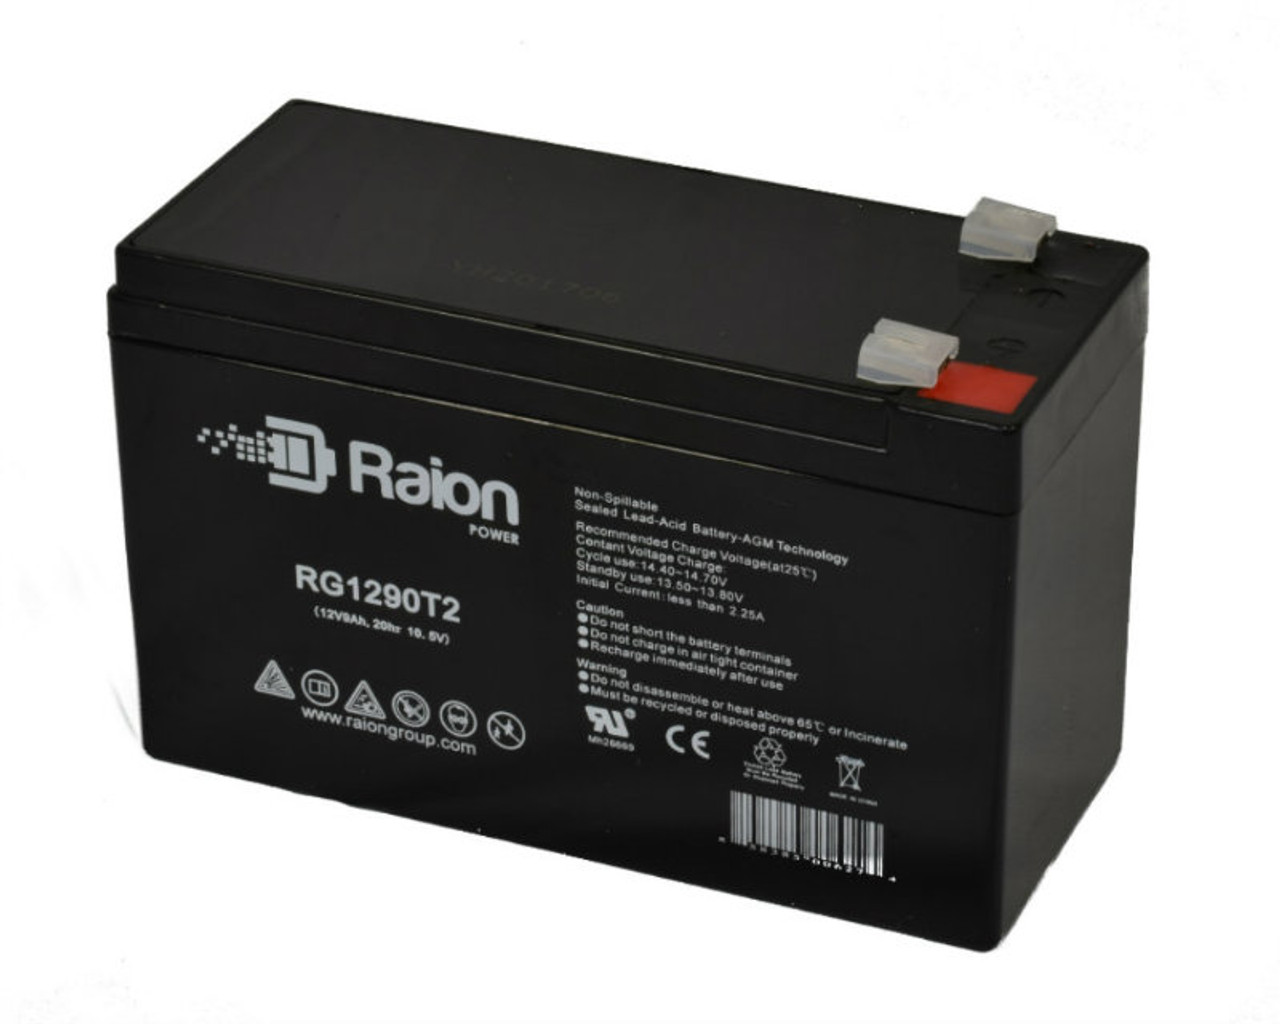 Raion Power RG1290T2 12V 9Ah AGM Battery for Best Battery SLA1290